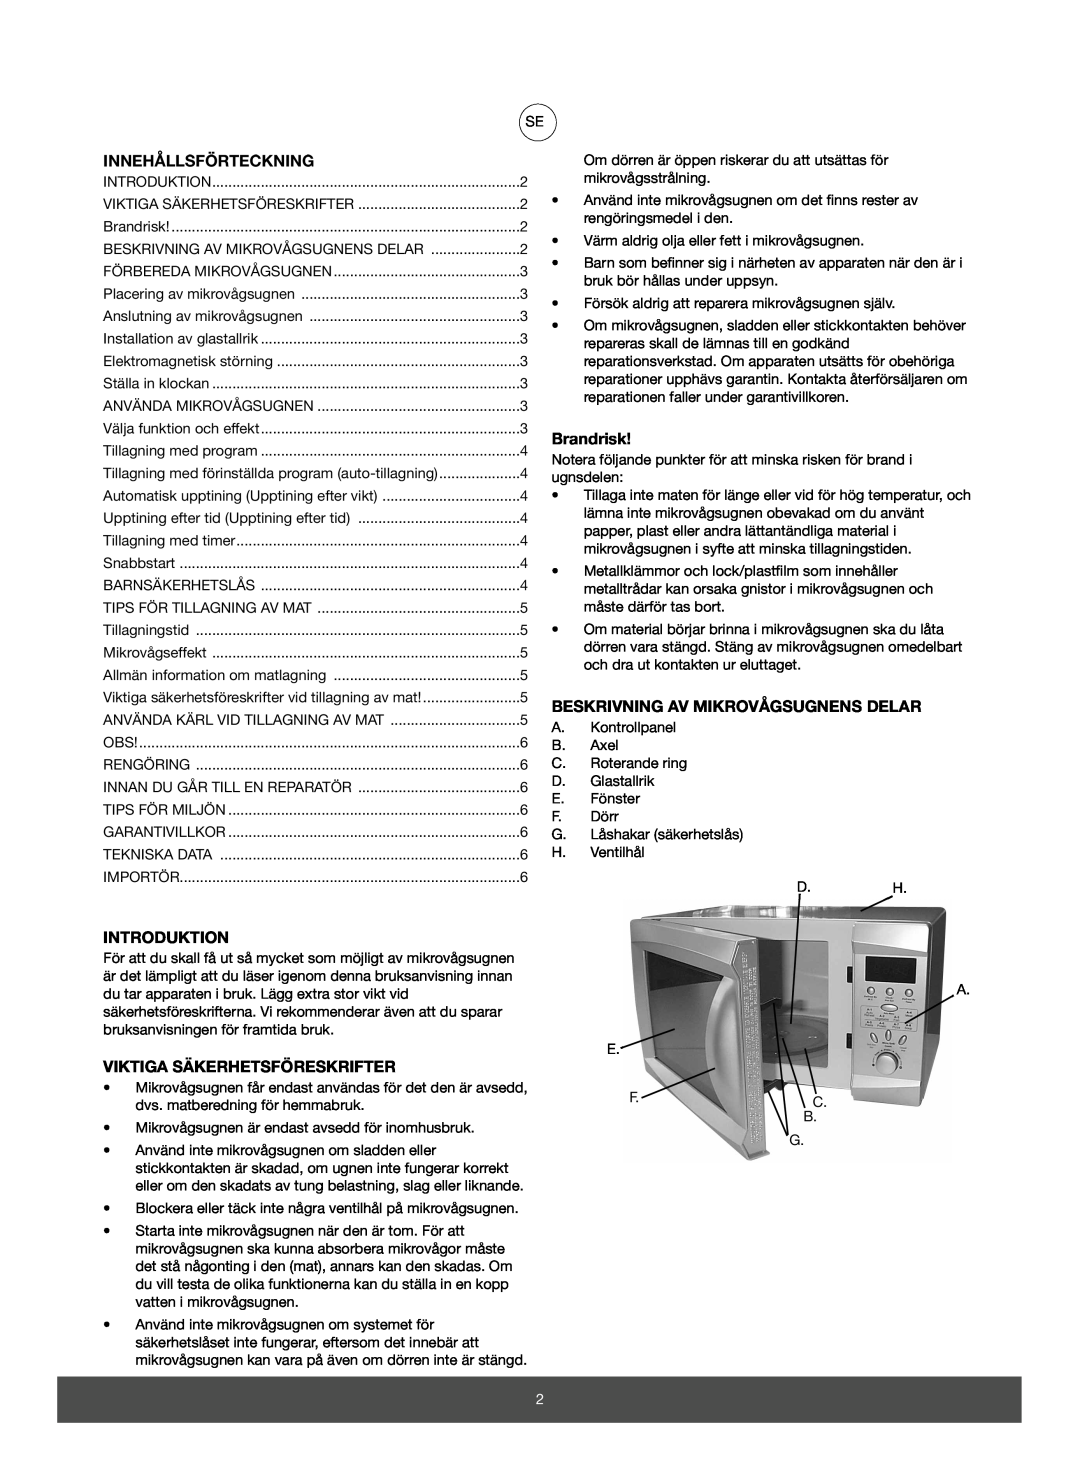 Melissa 653-082 manual Innehållsförteckning, Brandrisk, Beskrivning Av Mikrovågsugnens Delar, Introduktion 